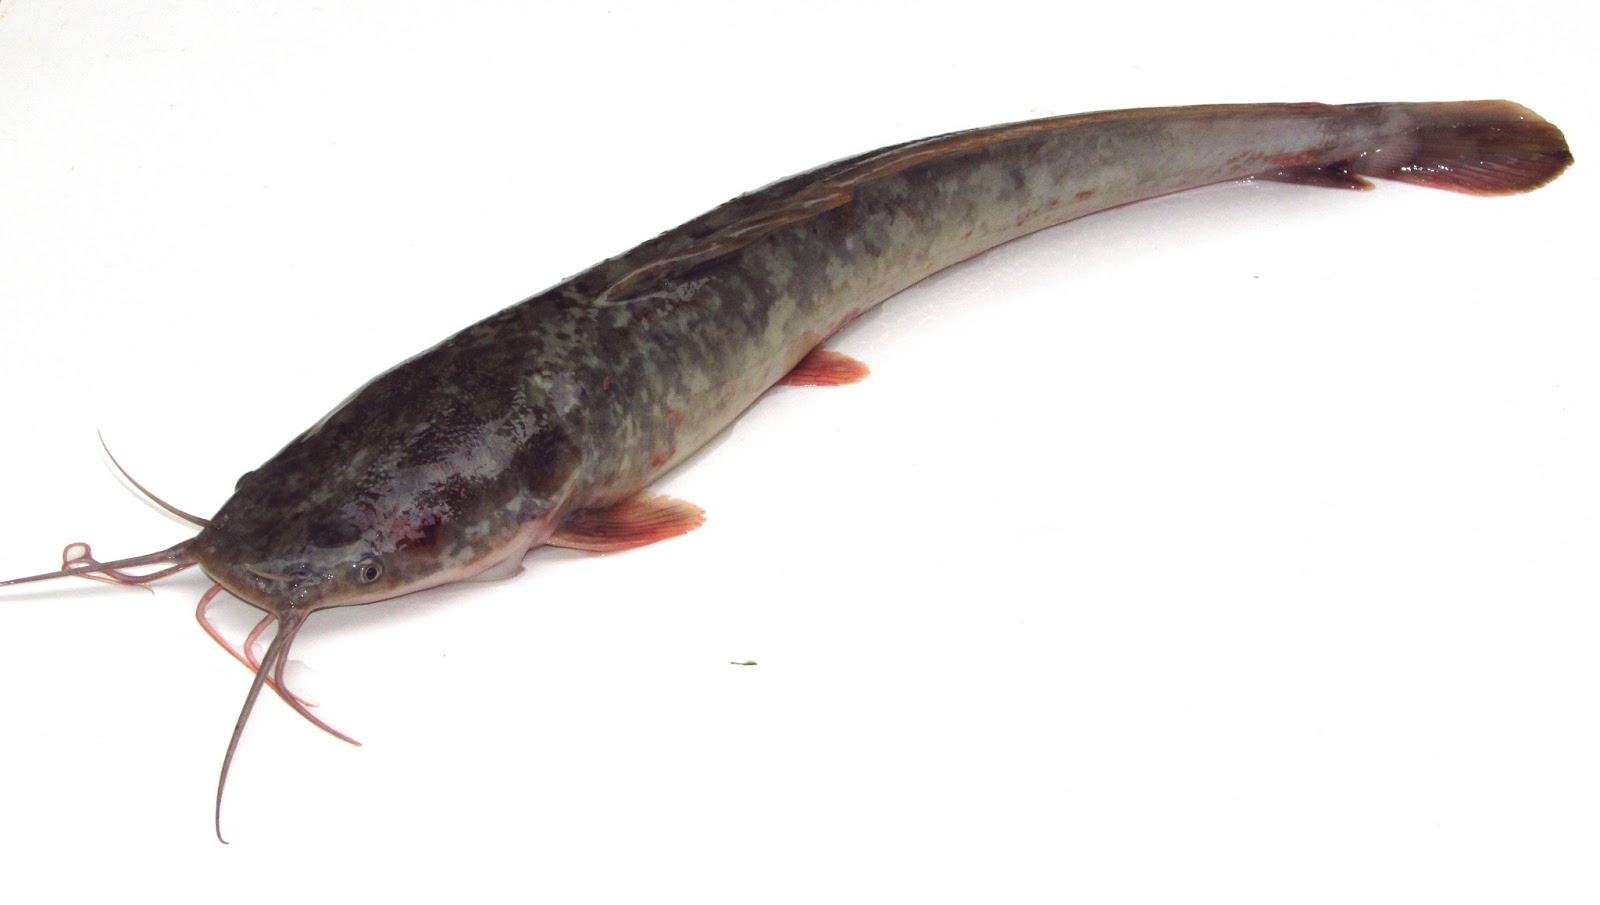 PEMBURU SEPIT BIRU: Betul ke Ikan keli makanan paling kotor di dunia